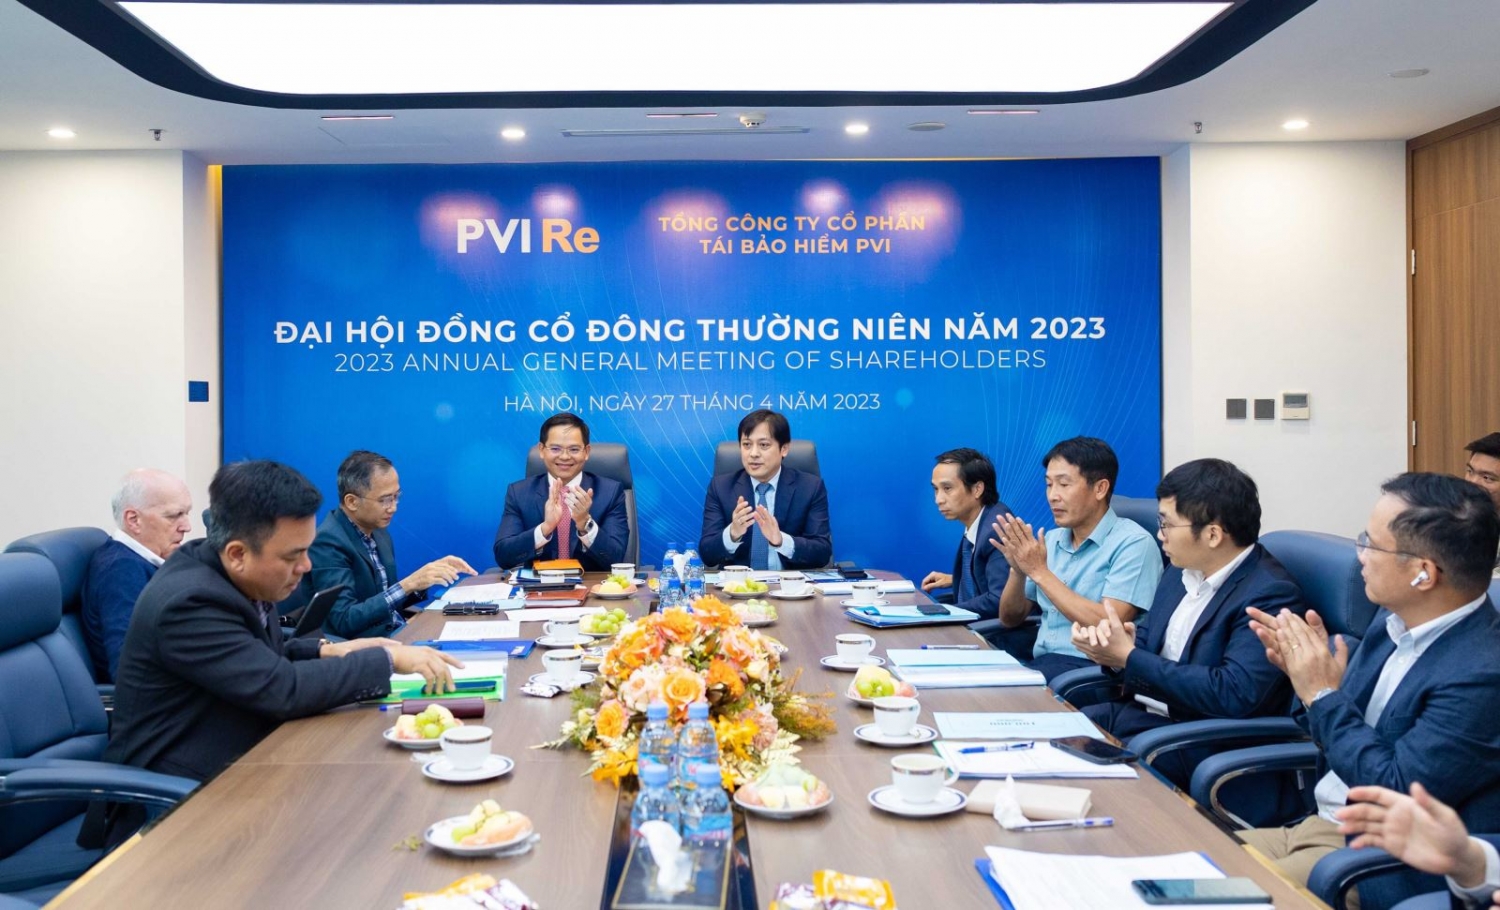 PVI Re - Vươn lên dẫn đầu thị trường tái bảo hiểm 2022